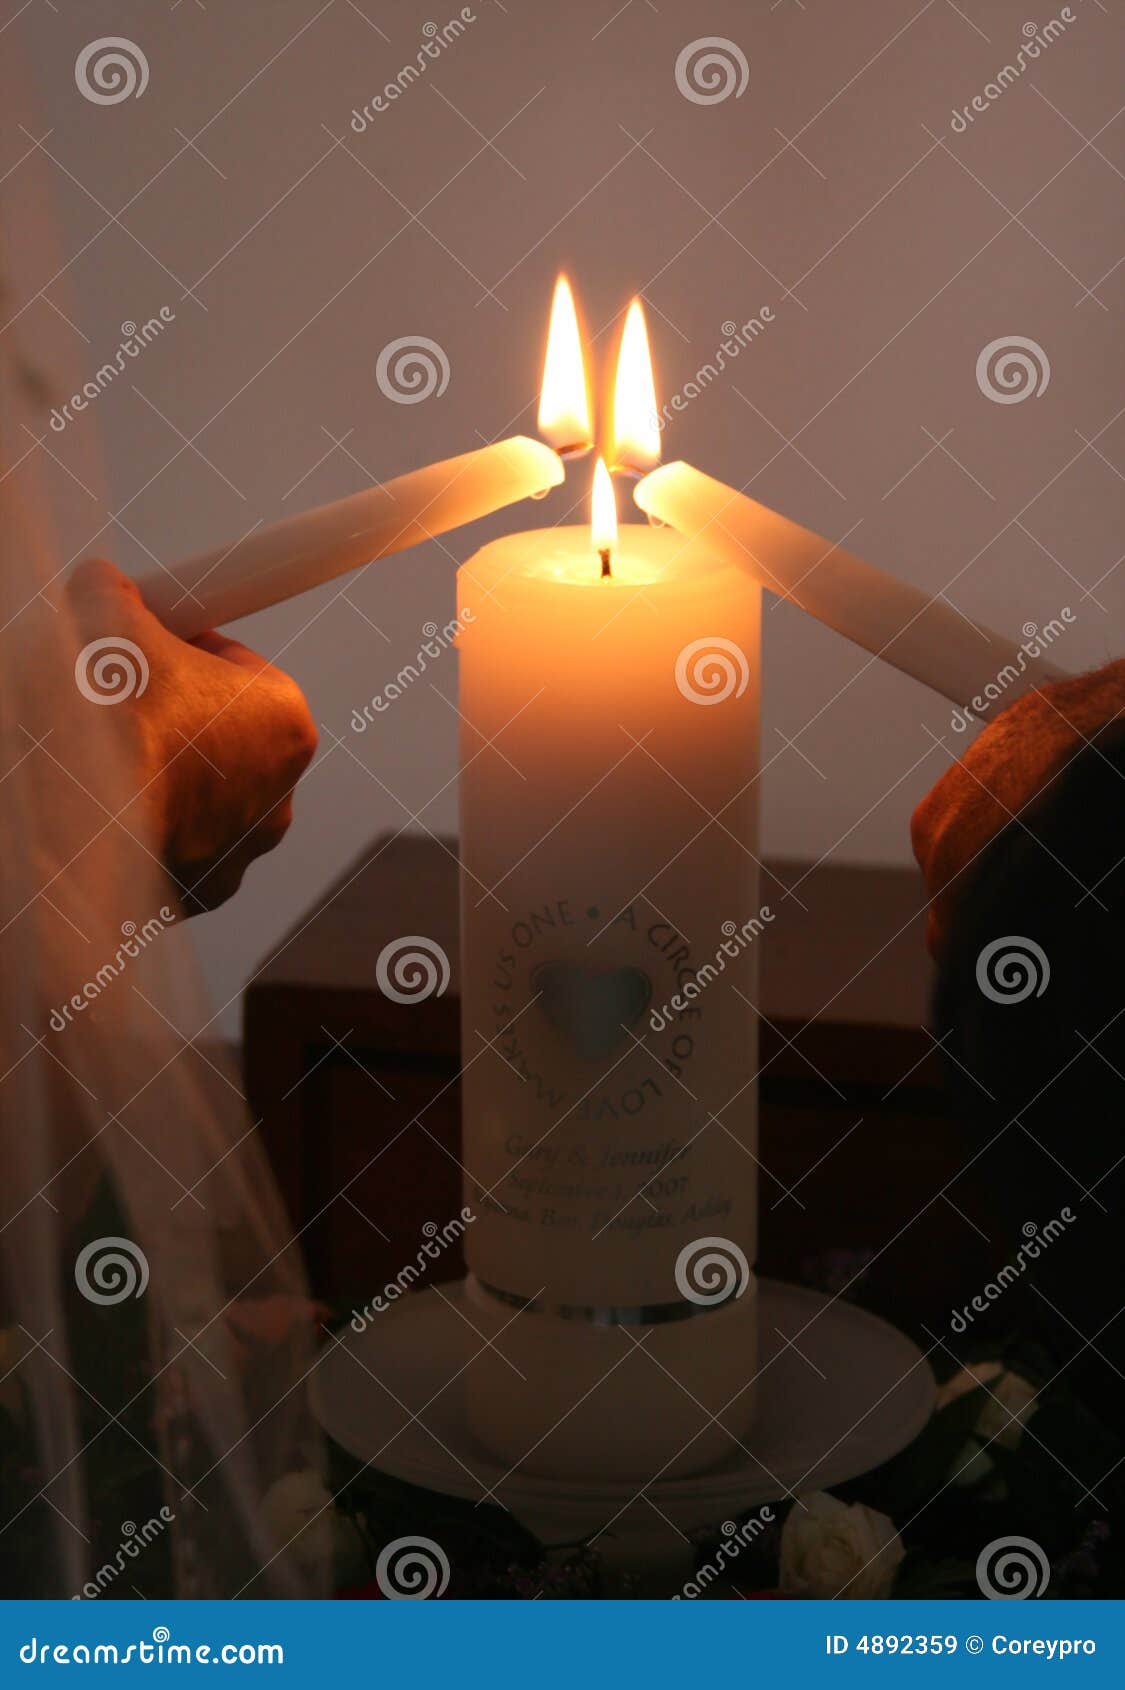 unity candle